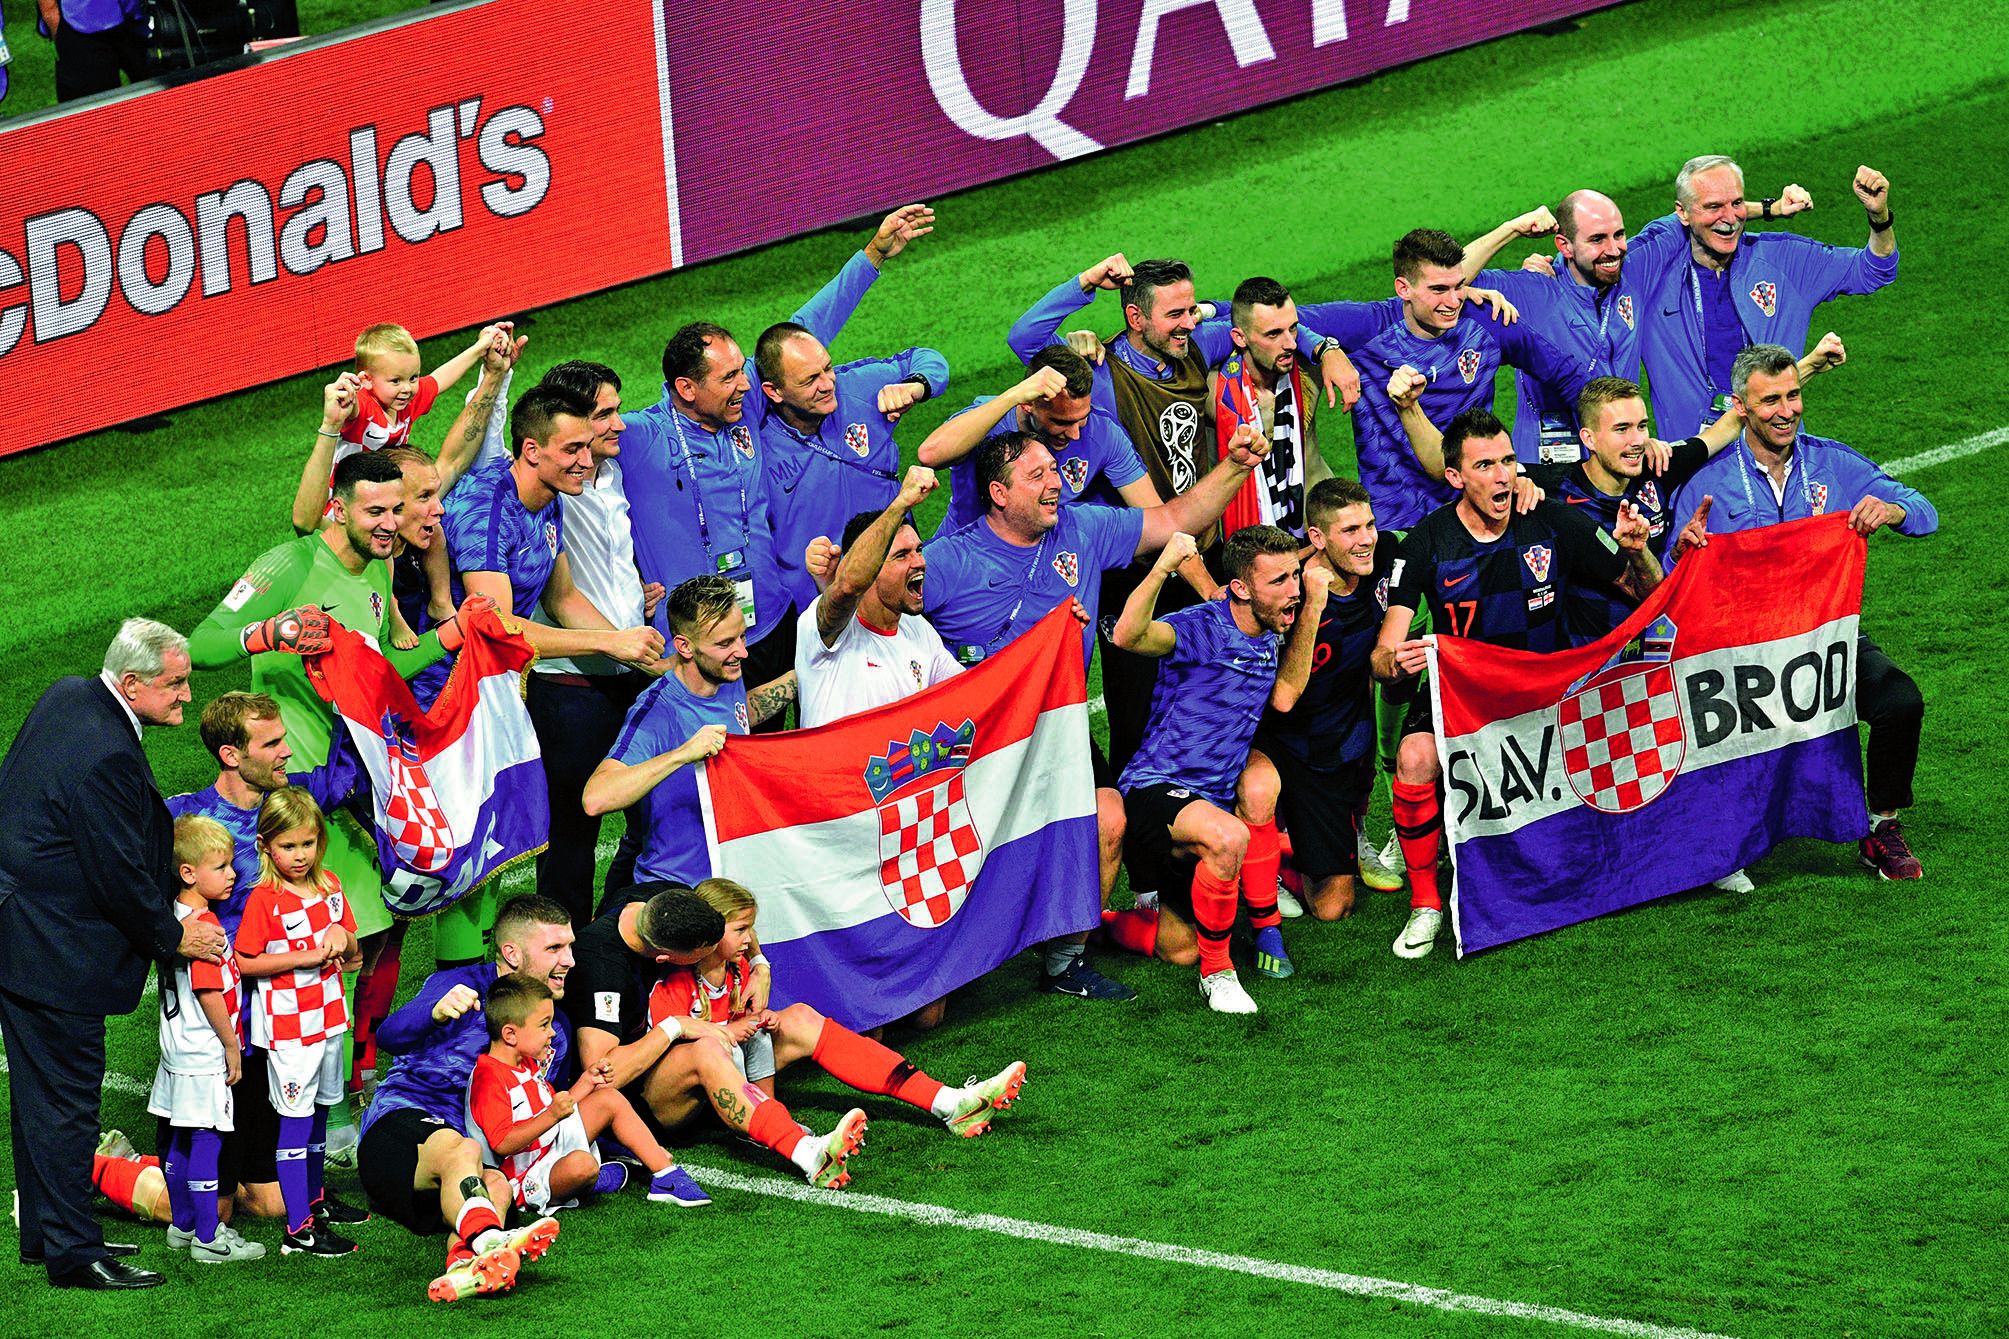 Les joueurs croates posent fièrement, en compagnie d’enfants, après leur victoire face à l’Angleterre.AFP